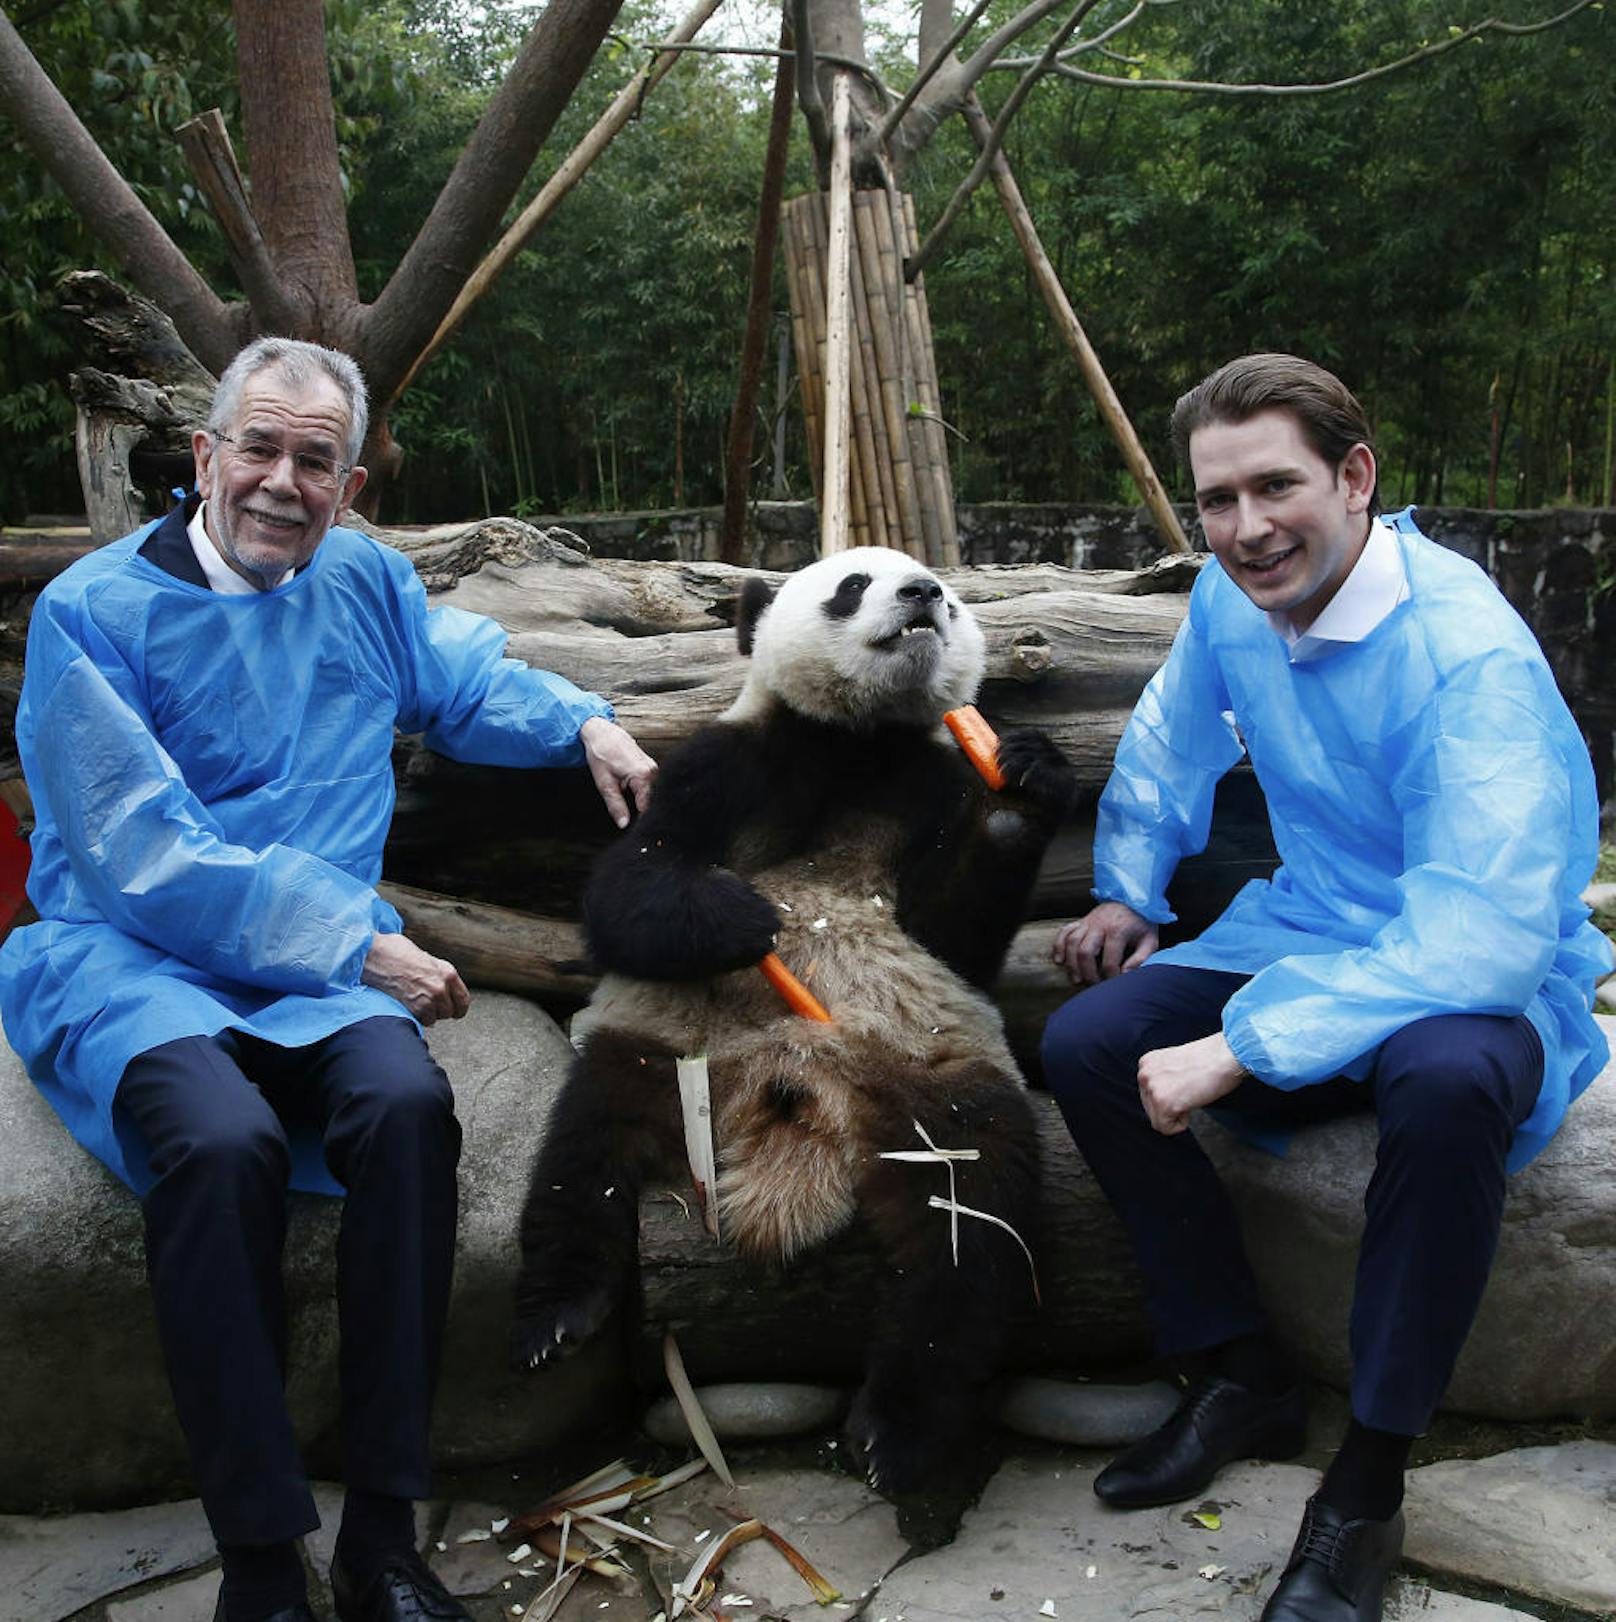 Bundespräsident Van der Bellen und Bundeskanzler Kurz bei den Pandas im Du Jiangyan Panda Park